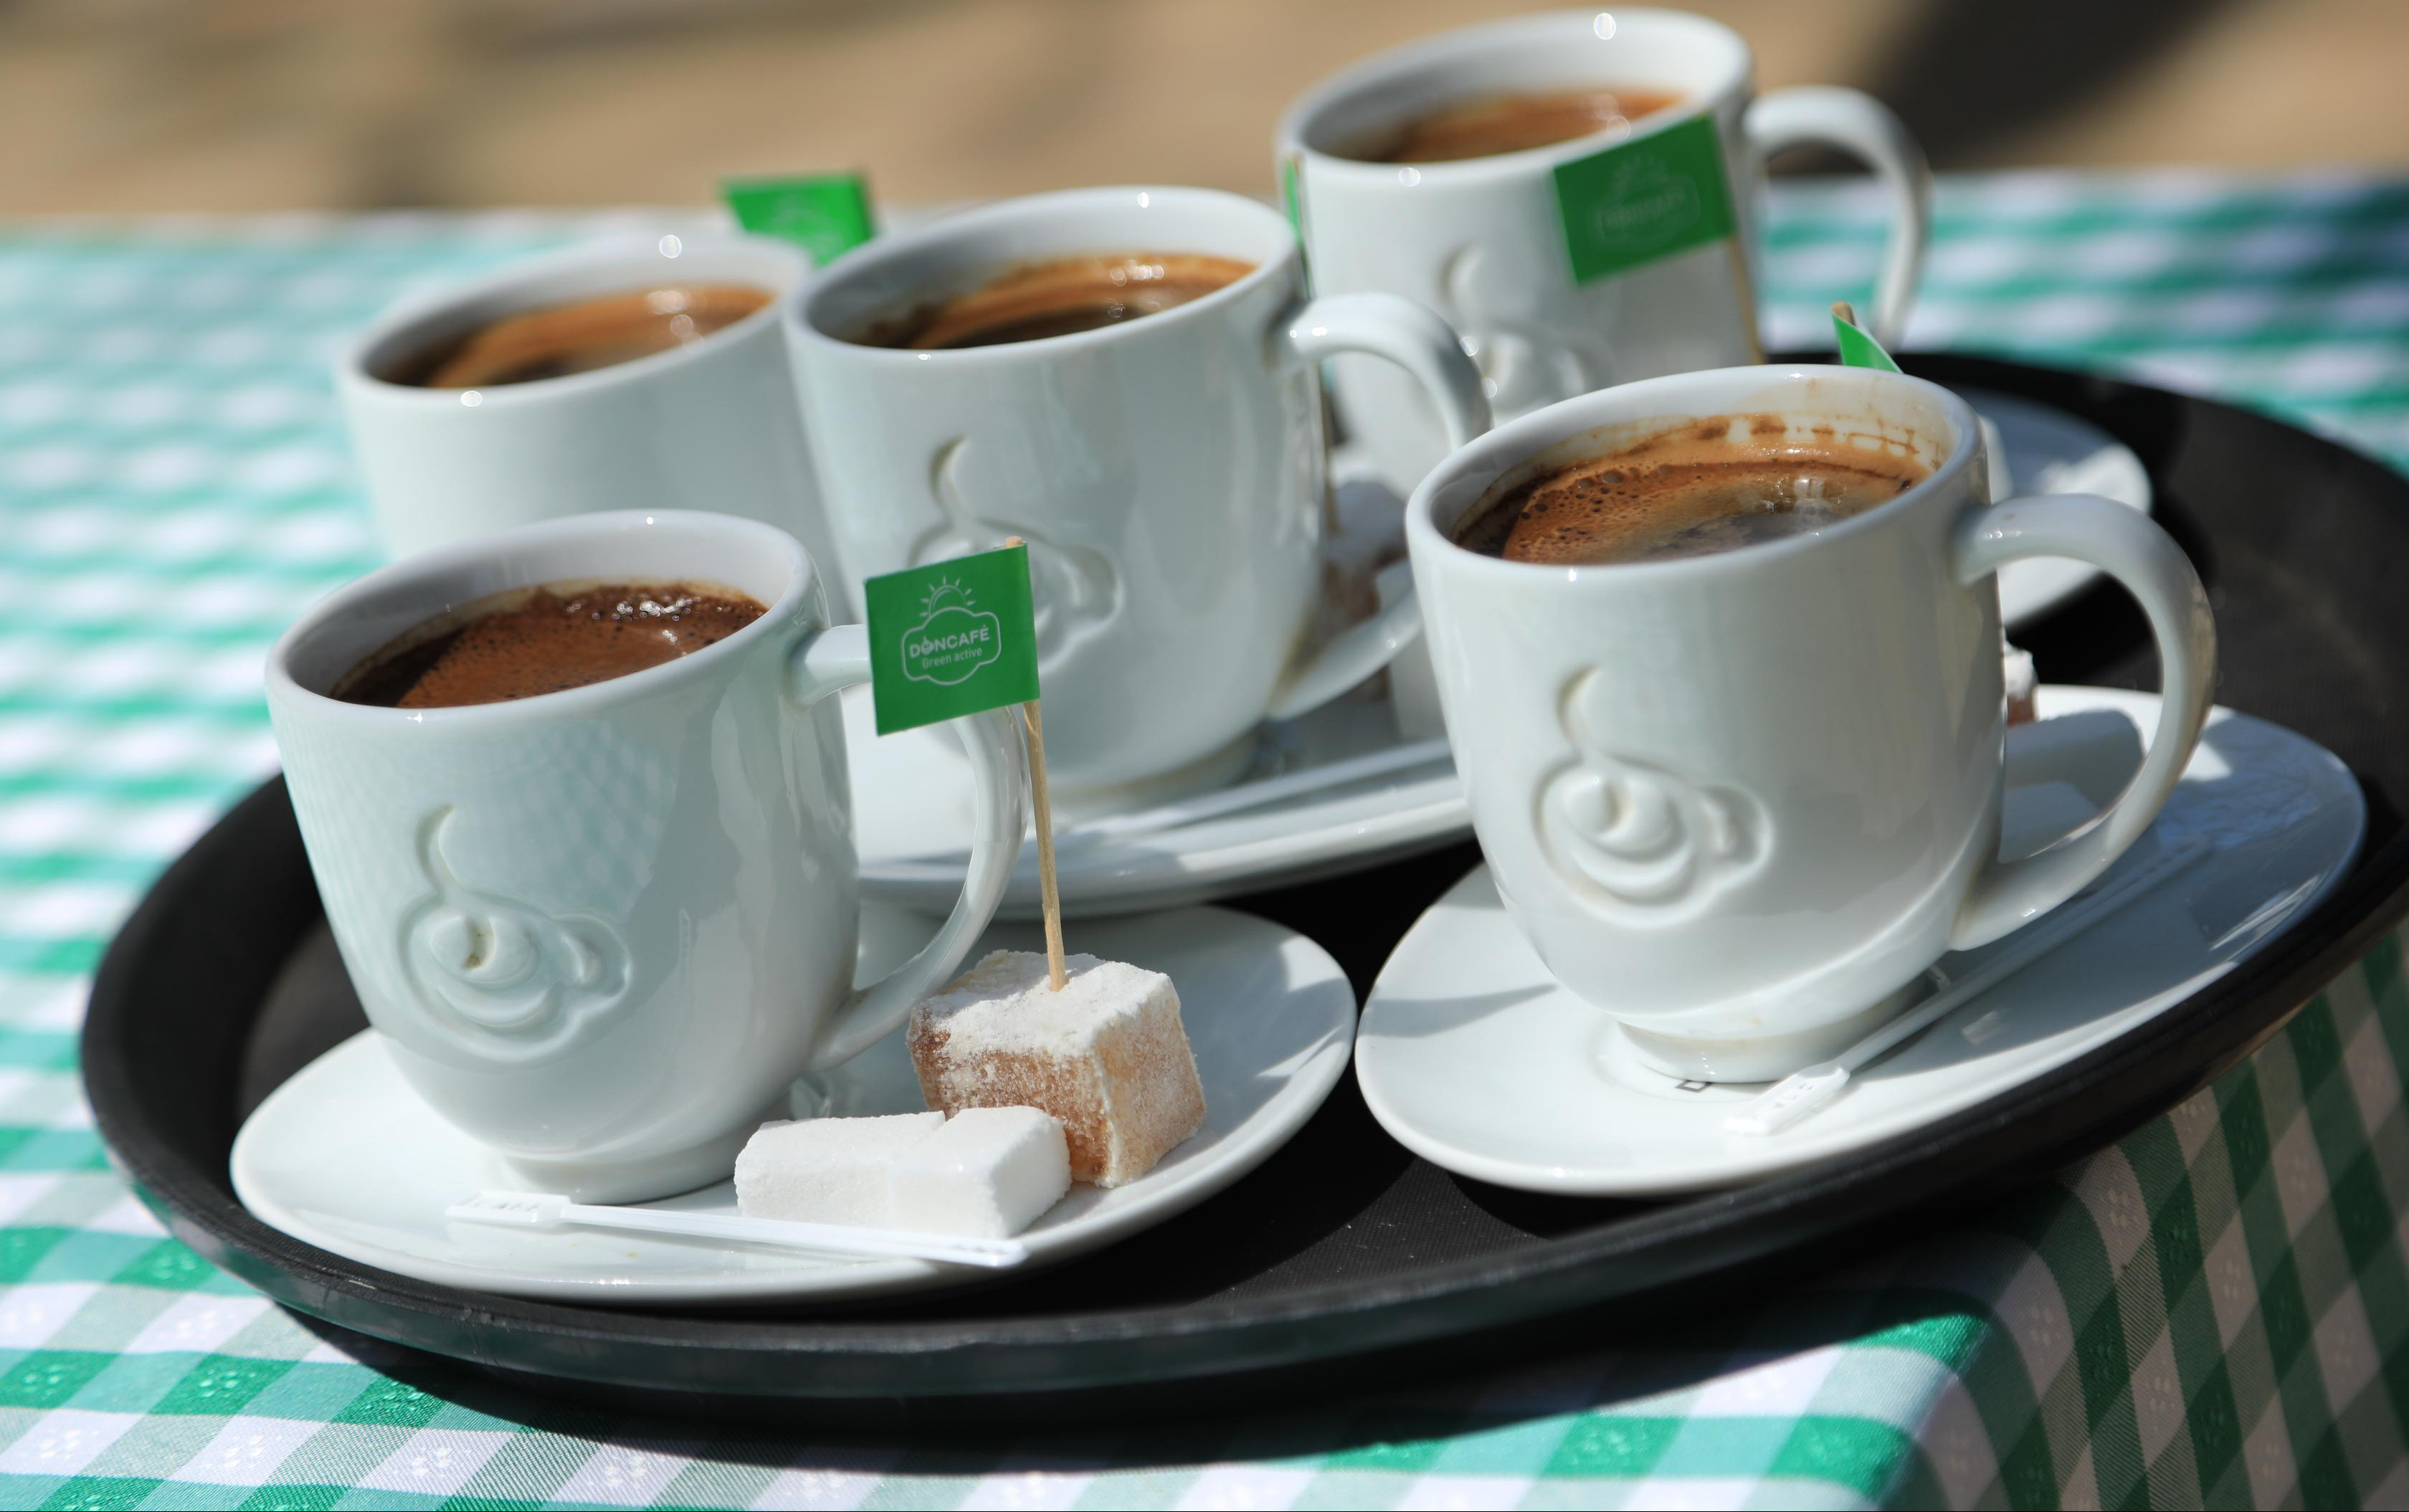 DA LI STE ZNALI KOLIKO JE KAFA VAŽNA? Kafa je broj jedan napitak po količini antioksidanasa!